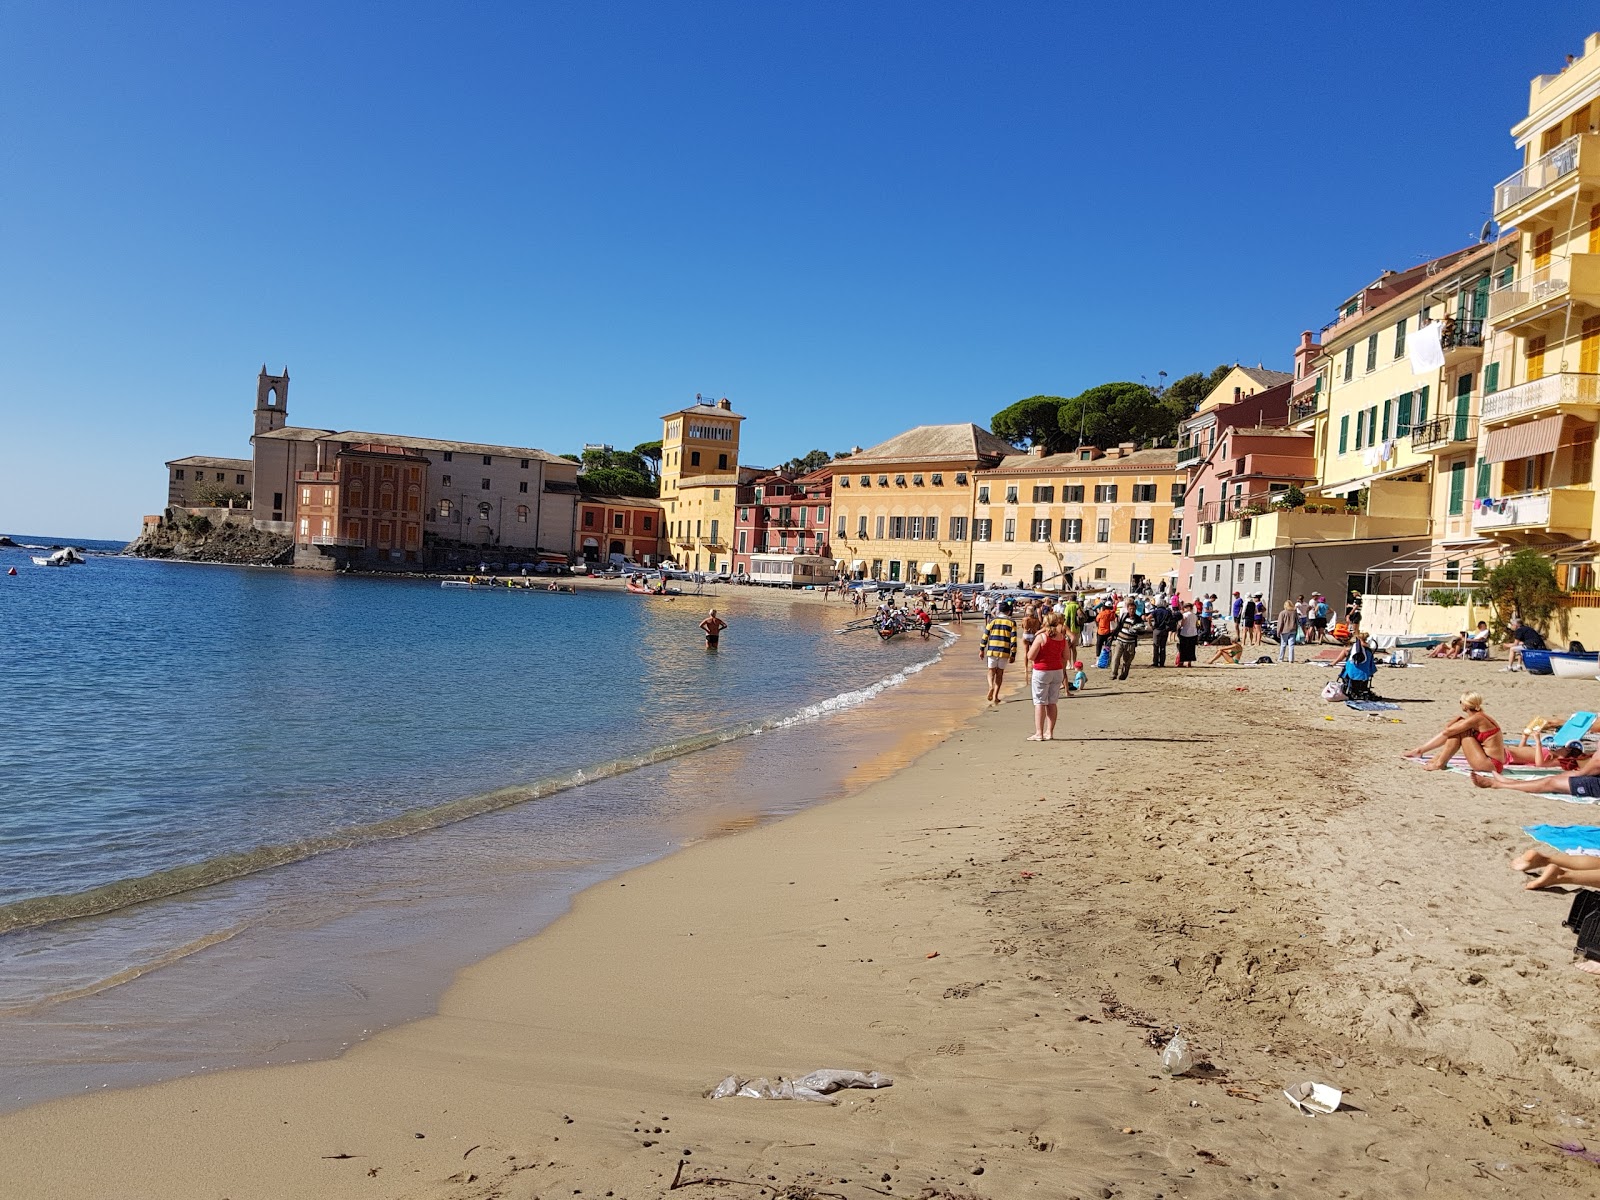 Spiaggia Baia del Silenzio'in fotoğrafı kısmen temiz temizlik seviyesi ile